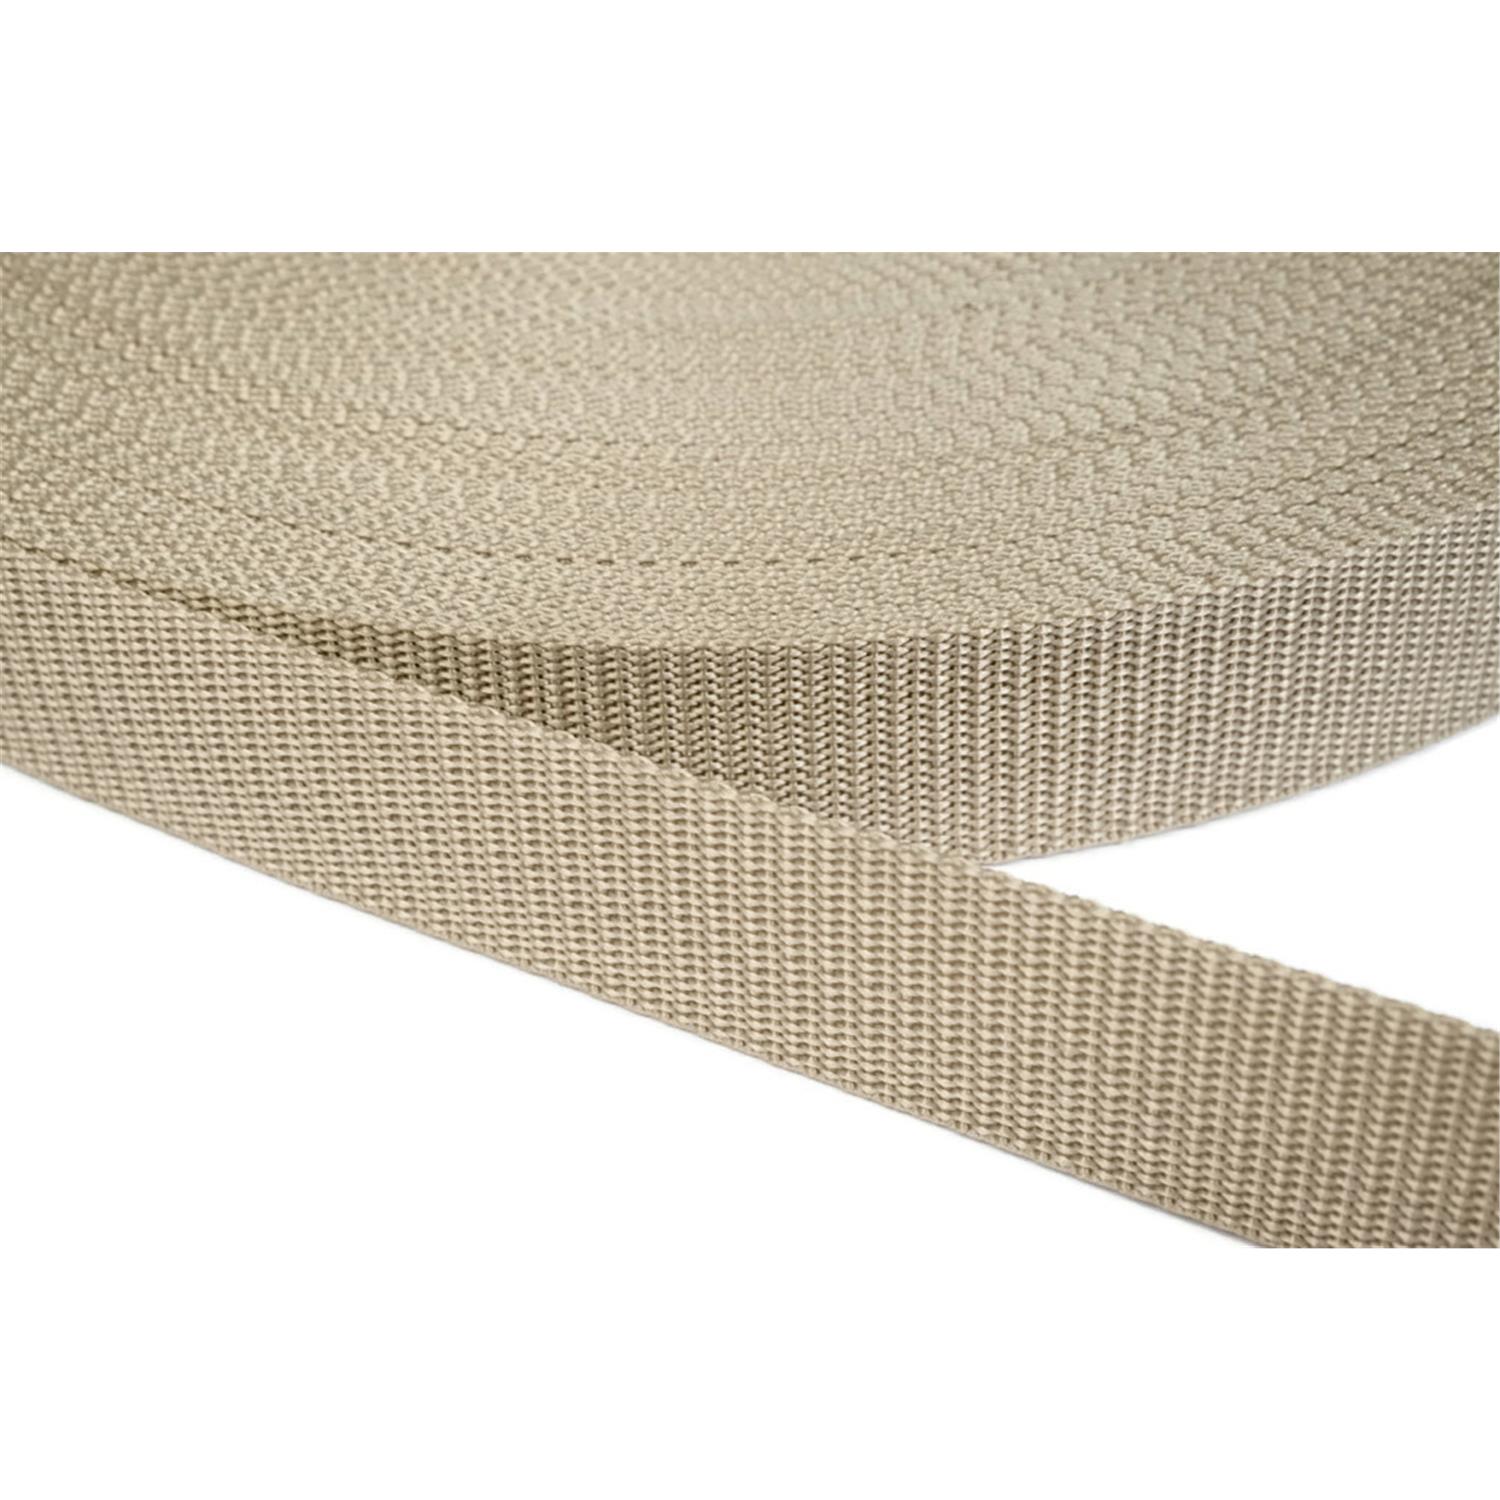 Gurtband 25mm breit aus Polypropylen in 41 Farben 03 - beige 12 Meter